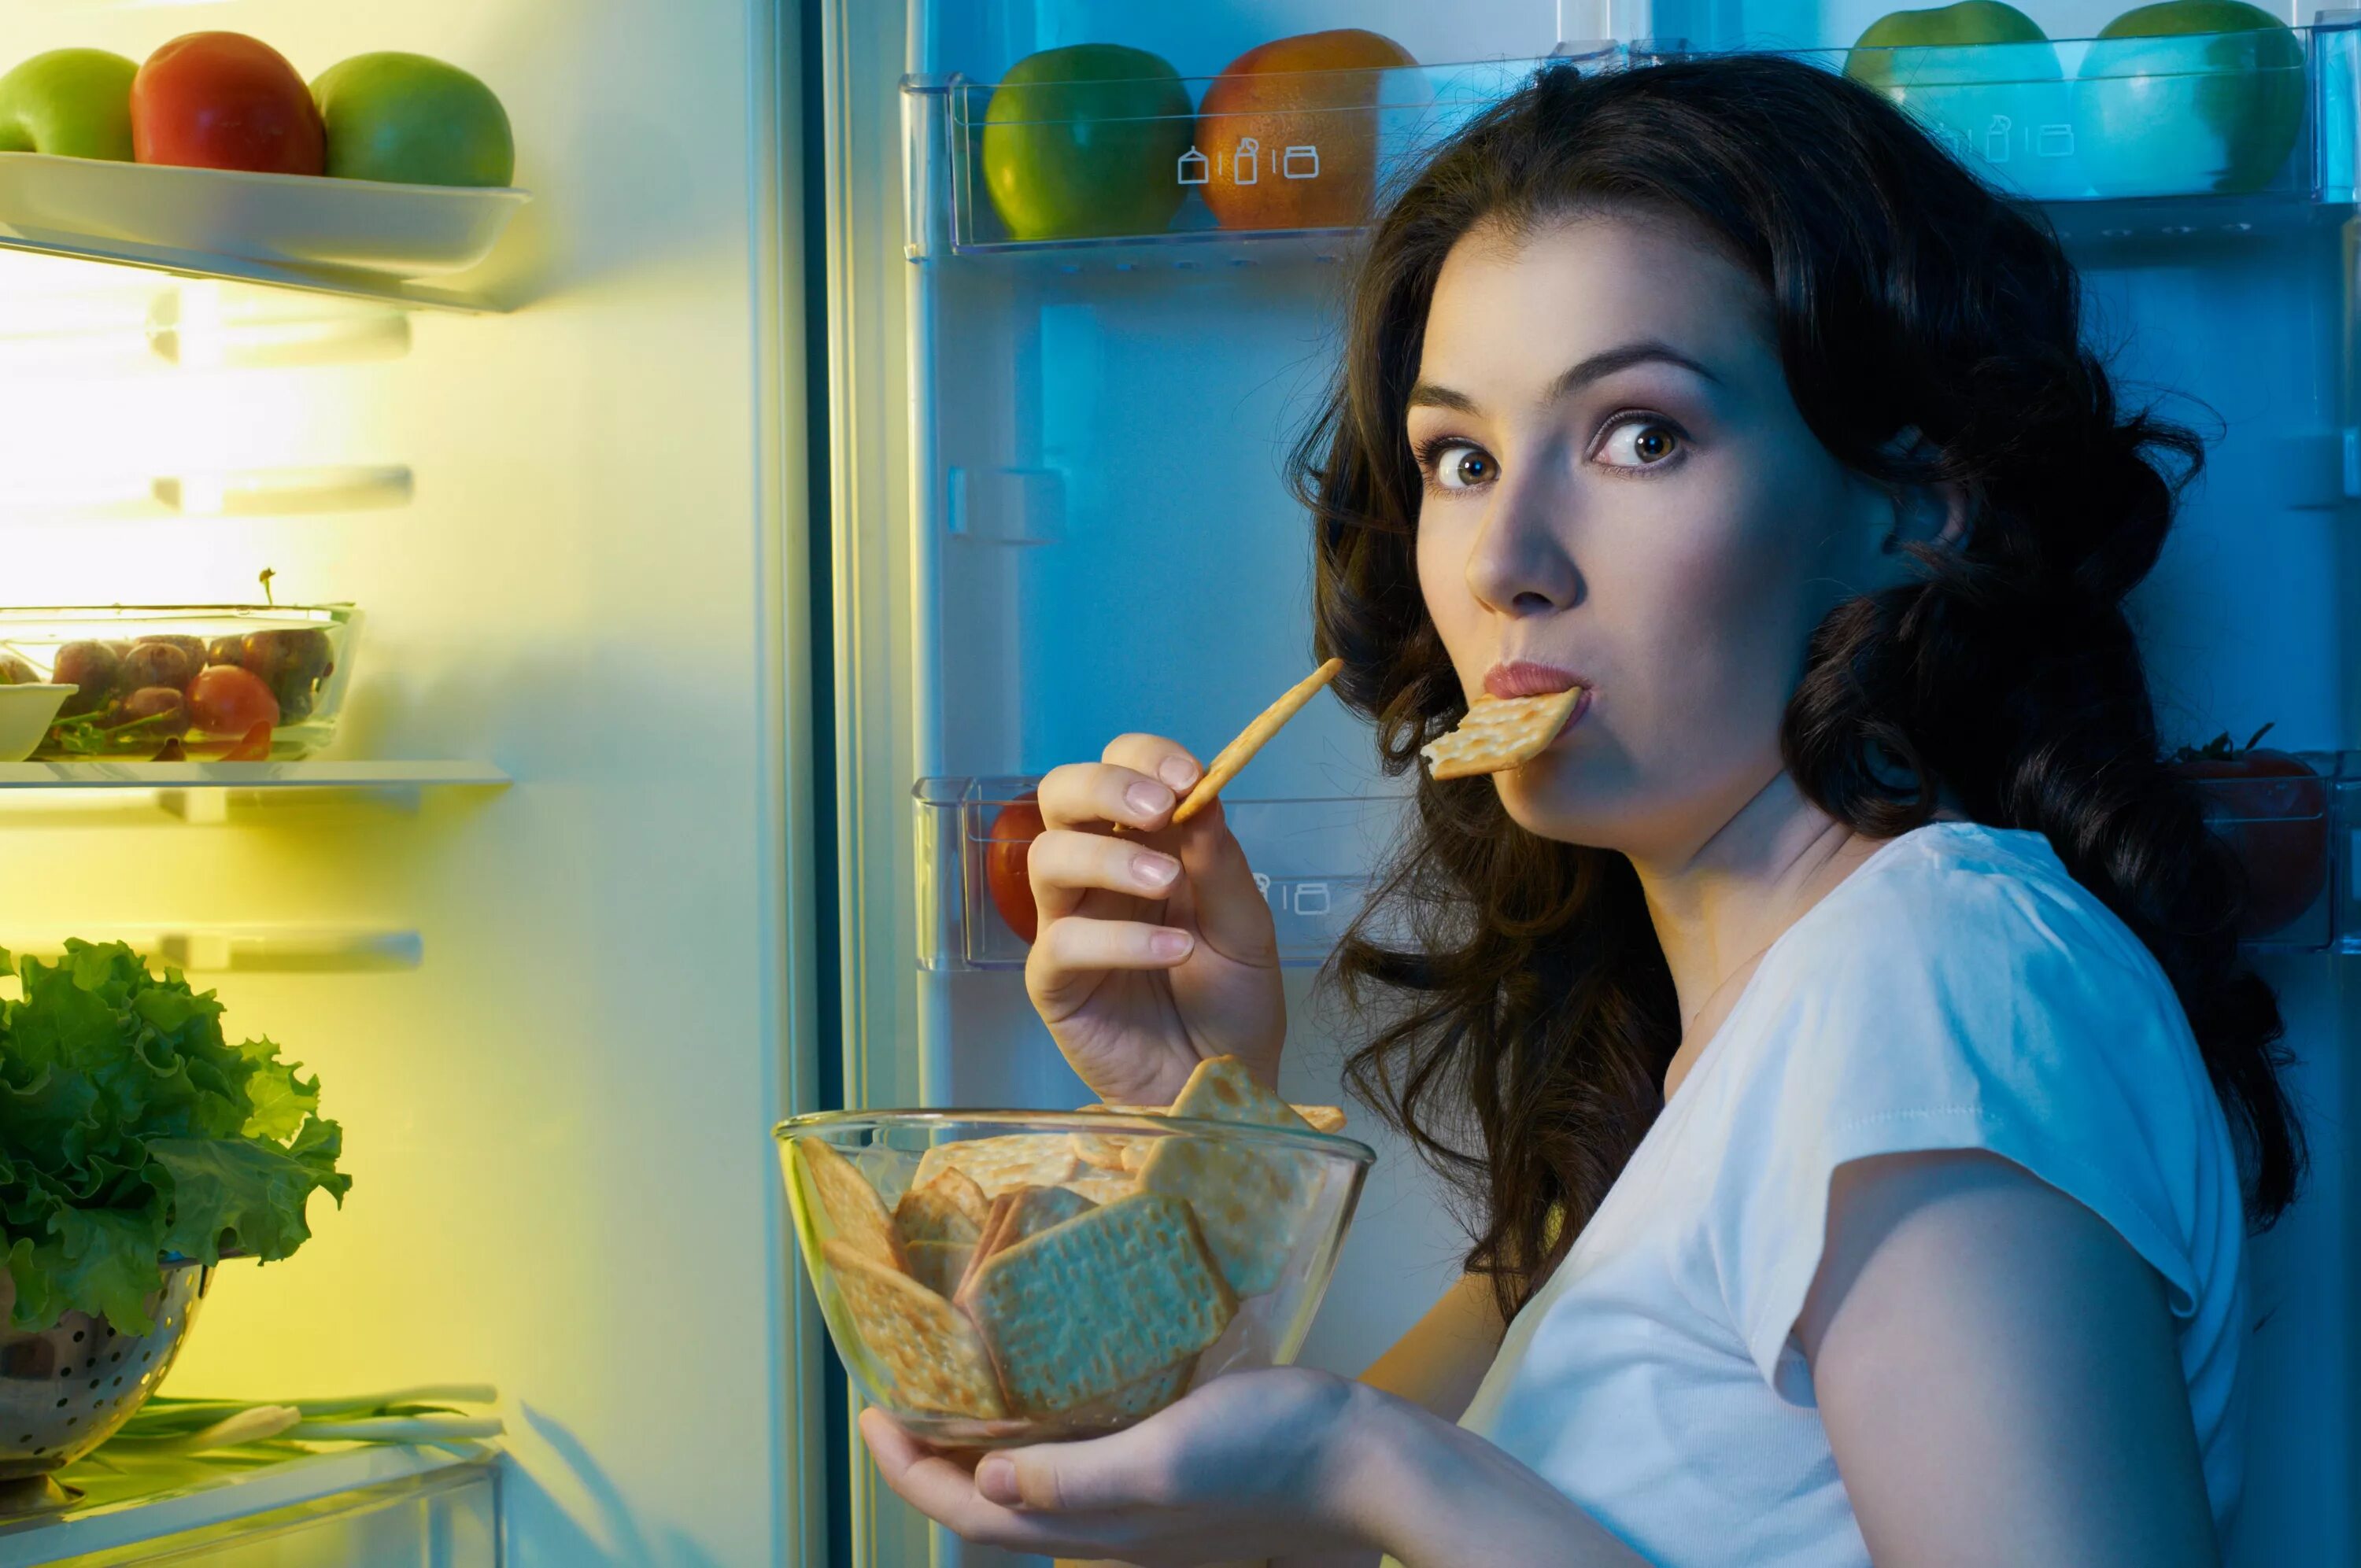 Едим на ночь чтобы похудеть. Человек с едой. Девушка возле холодильника. Девушка с едой. Еда на женщине.